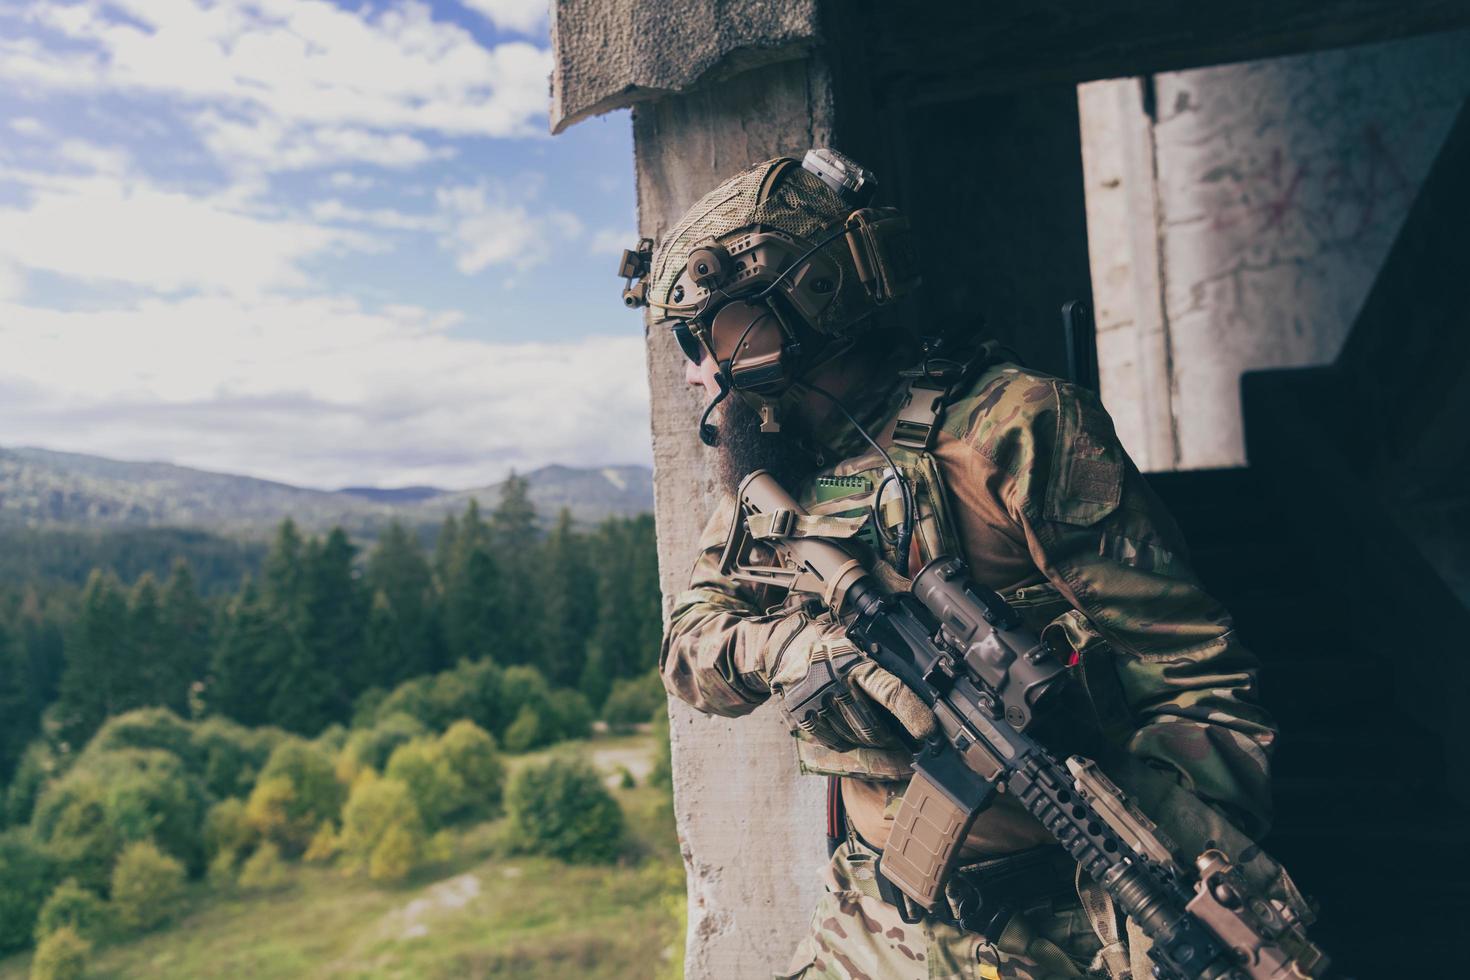 um soldado barbudo de uniforme das forças especiais em uma ação militar perigosa em uma área inimiga perigosa. foco seletivo foto